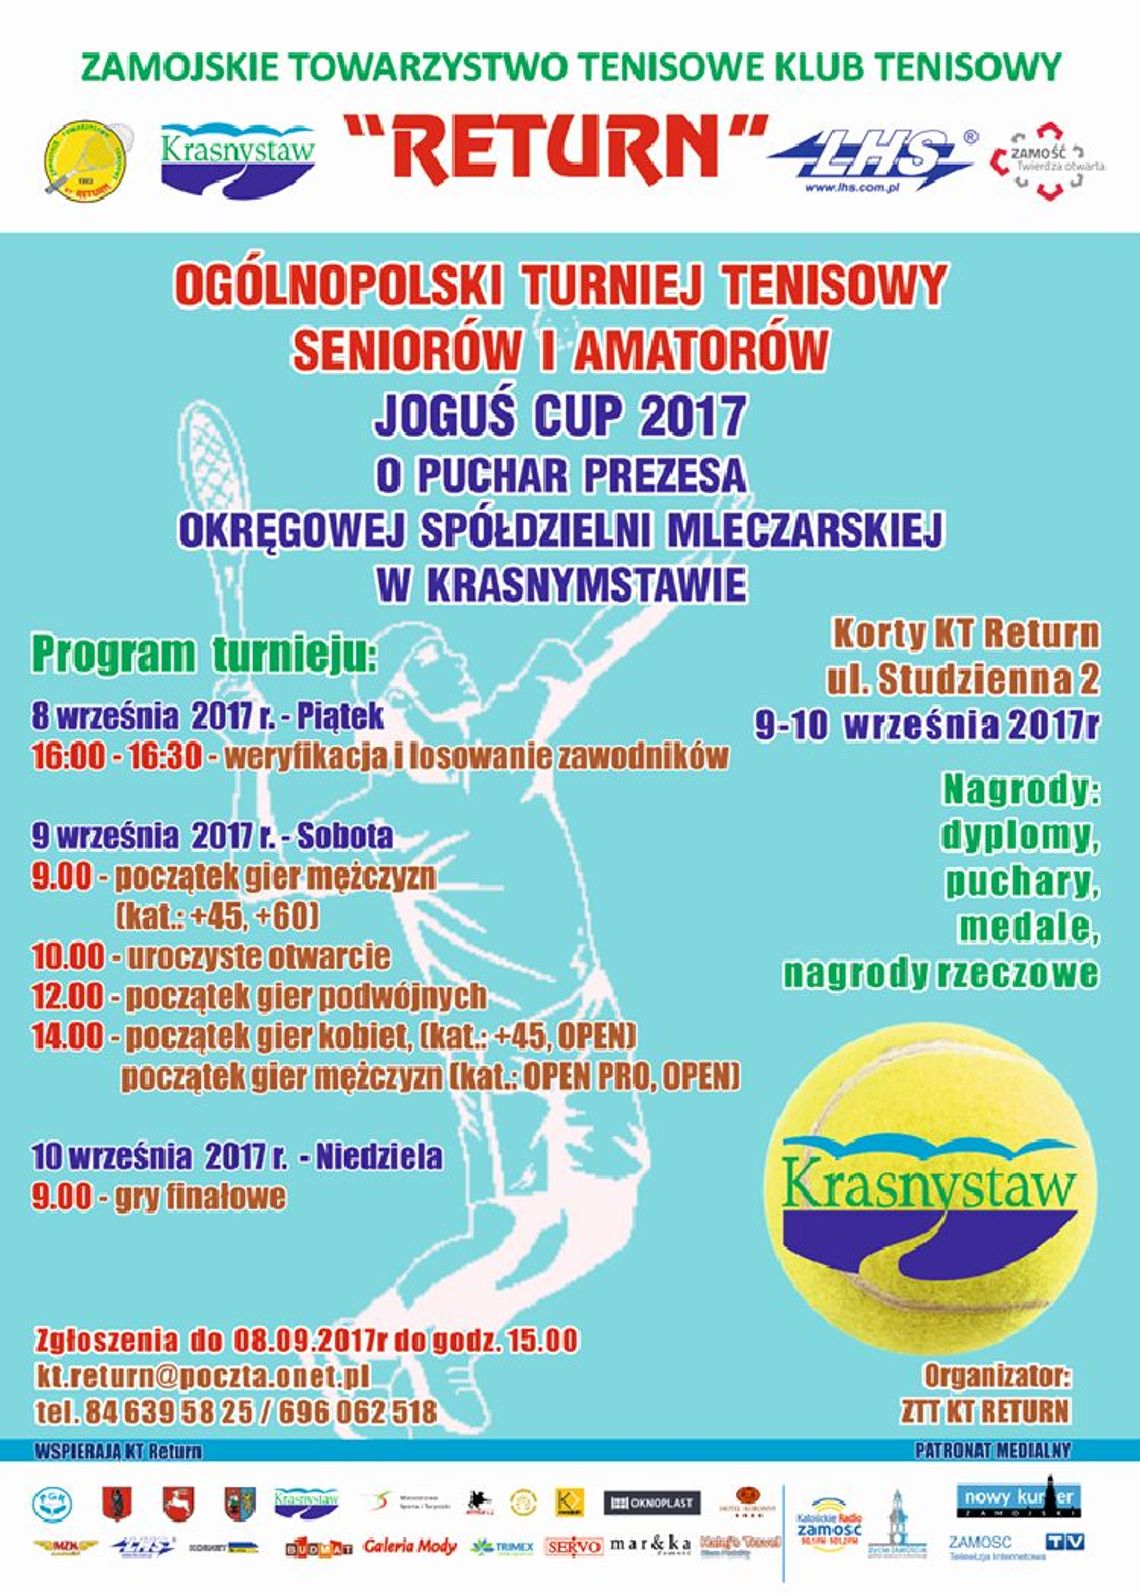 JOGUŚ CUP 2017